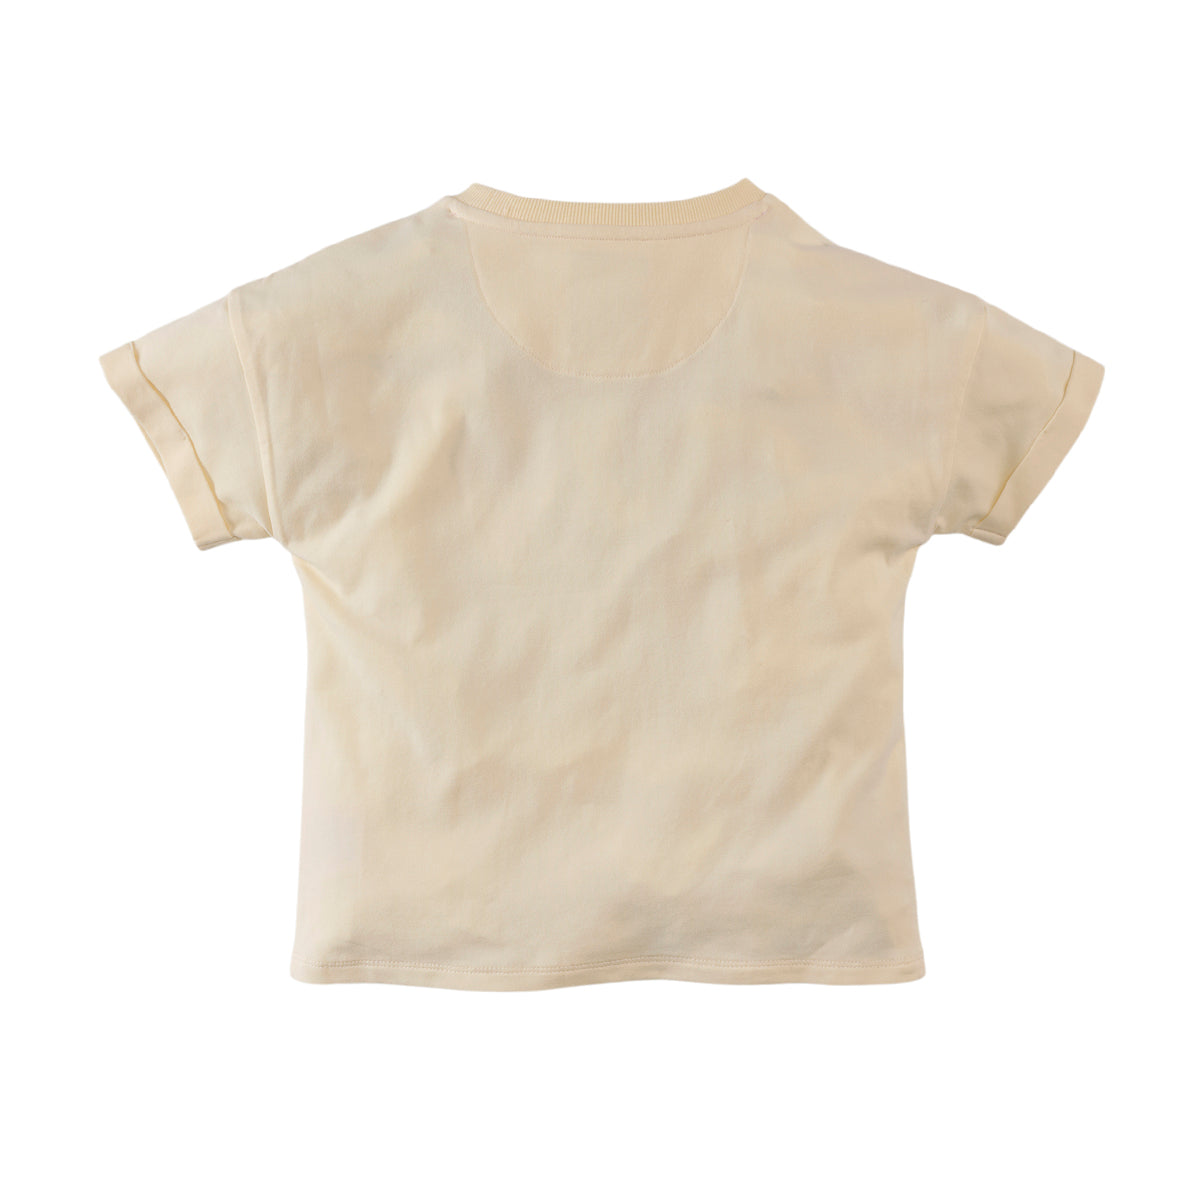 Meisjes Short Sleeve Joly van Z8 in de kleur Cloud cream in maat 140-146.